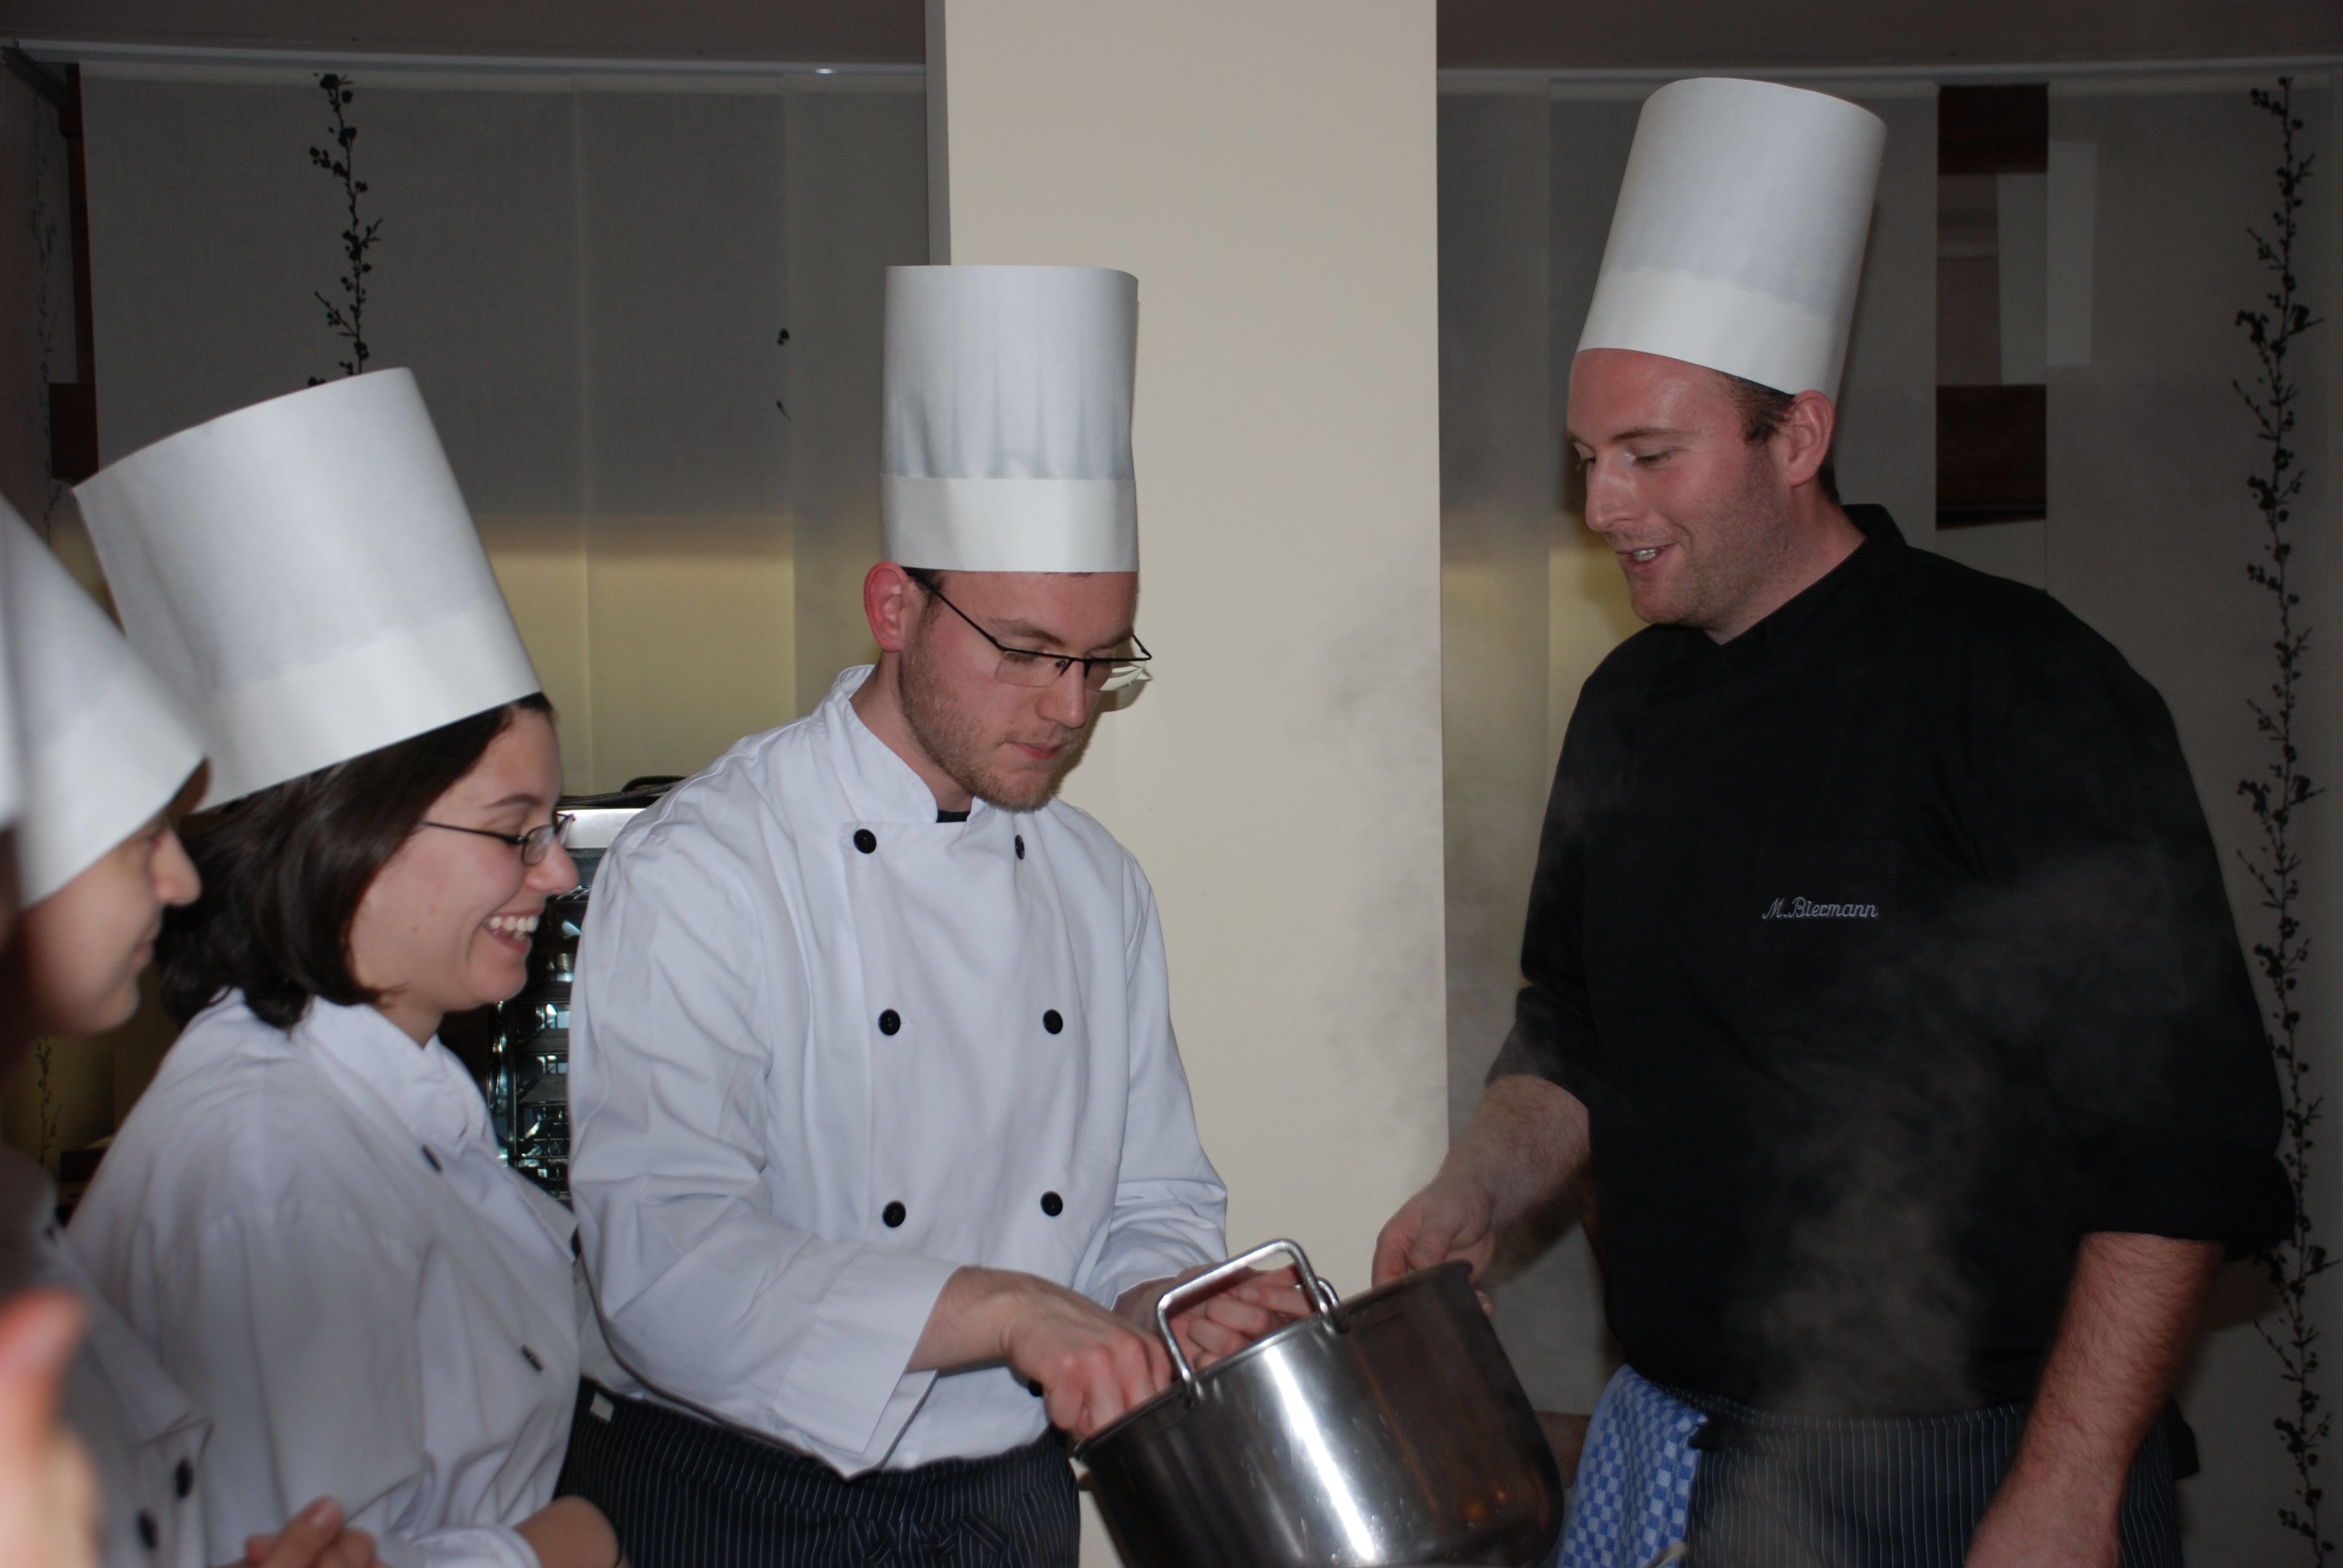 Momentaufnahme beim Kochkurs: Mensakoch erklärt Studierenden die Zubereitung des Essens.